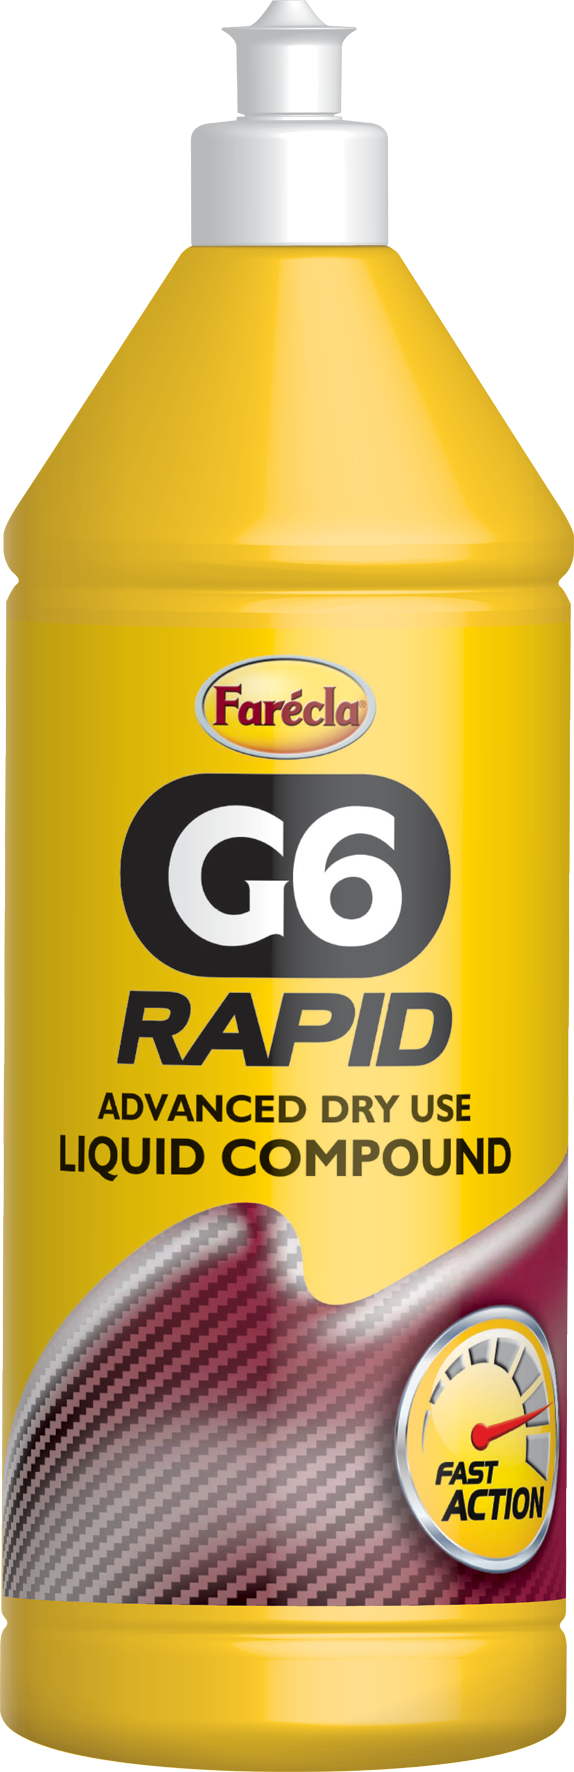 Farecla G6 Rapid Grade Liquid Compound 1L